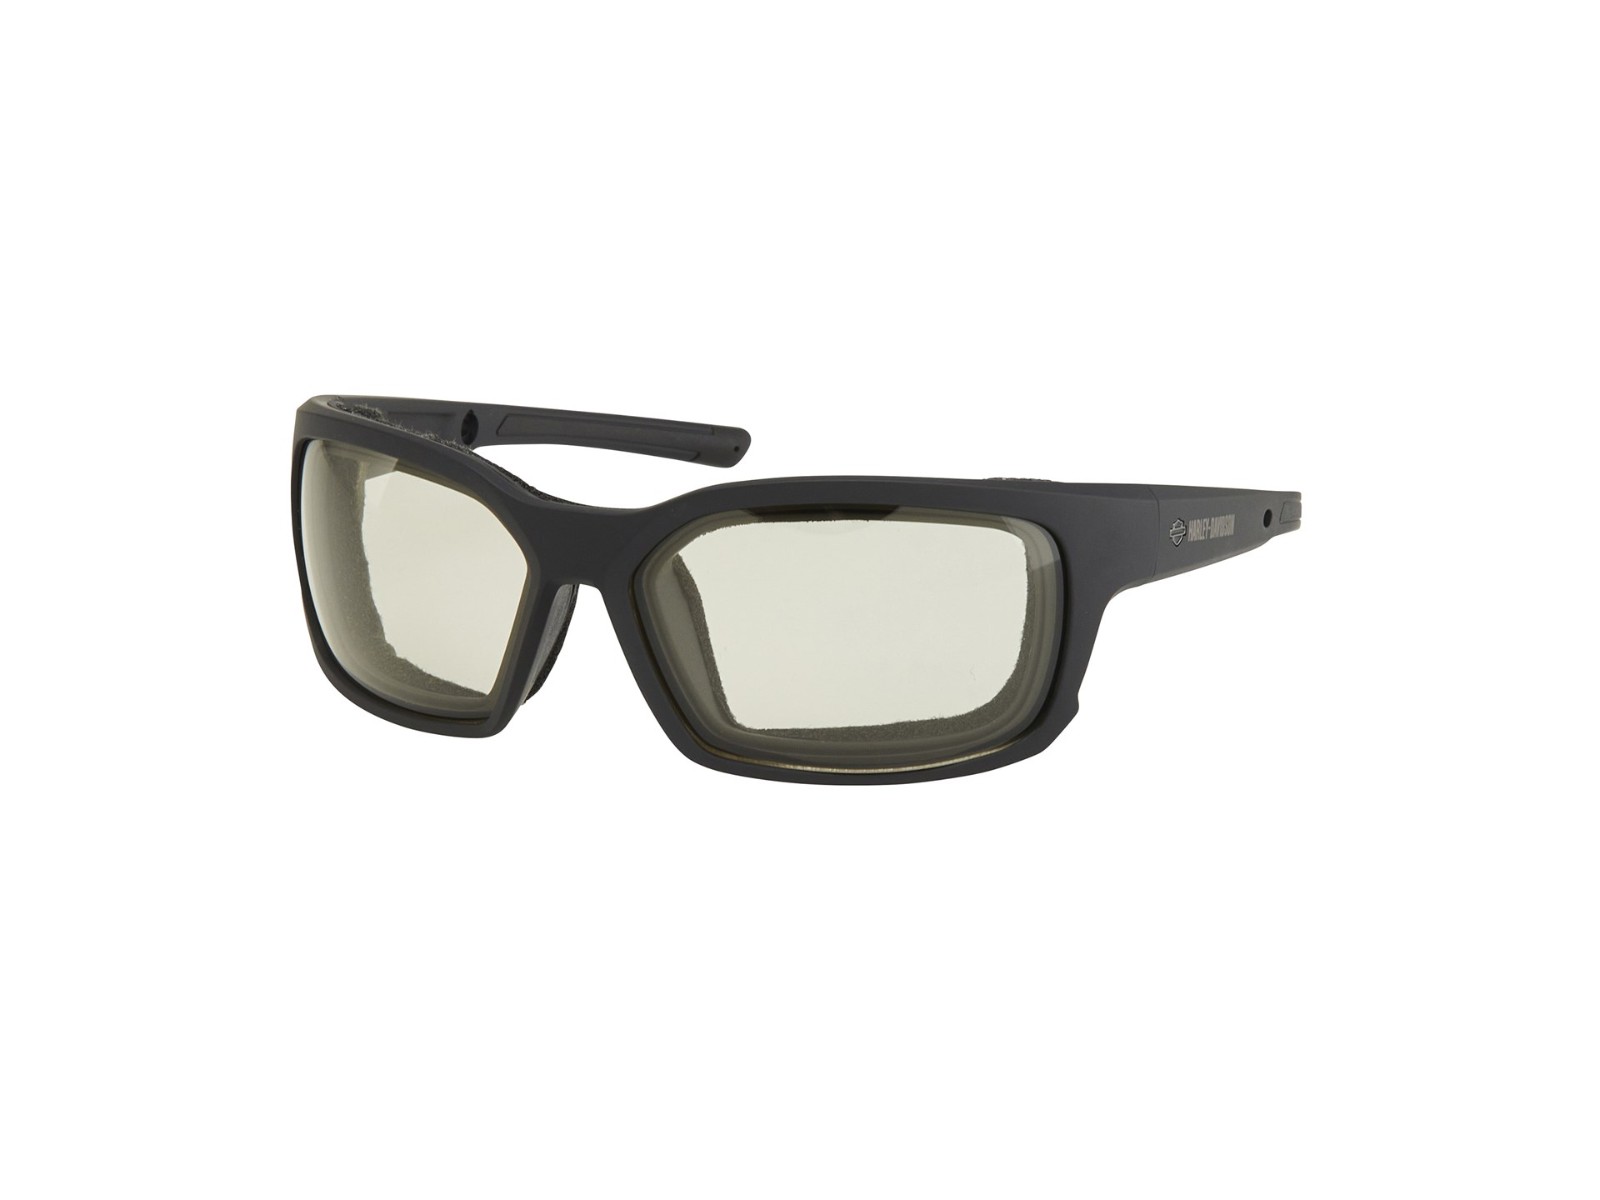 Gafas de sol de seguridad para motocicleta que se adaptan a las gafas.  Lentes amarillas cumplen con las normas ANSI Z87.1 para gafas de seguridad  con